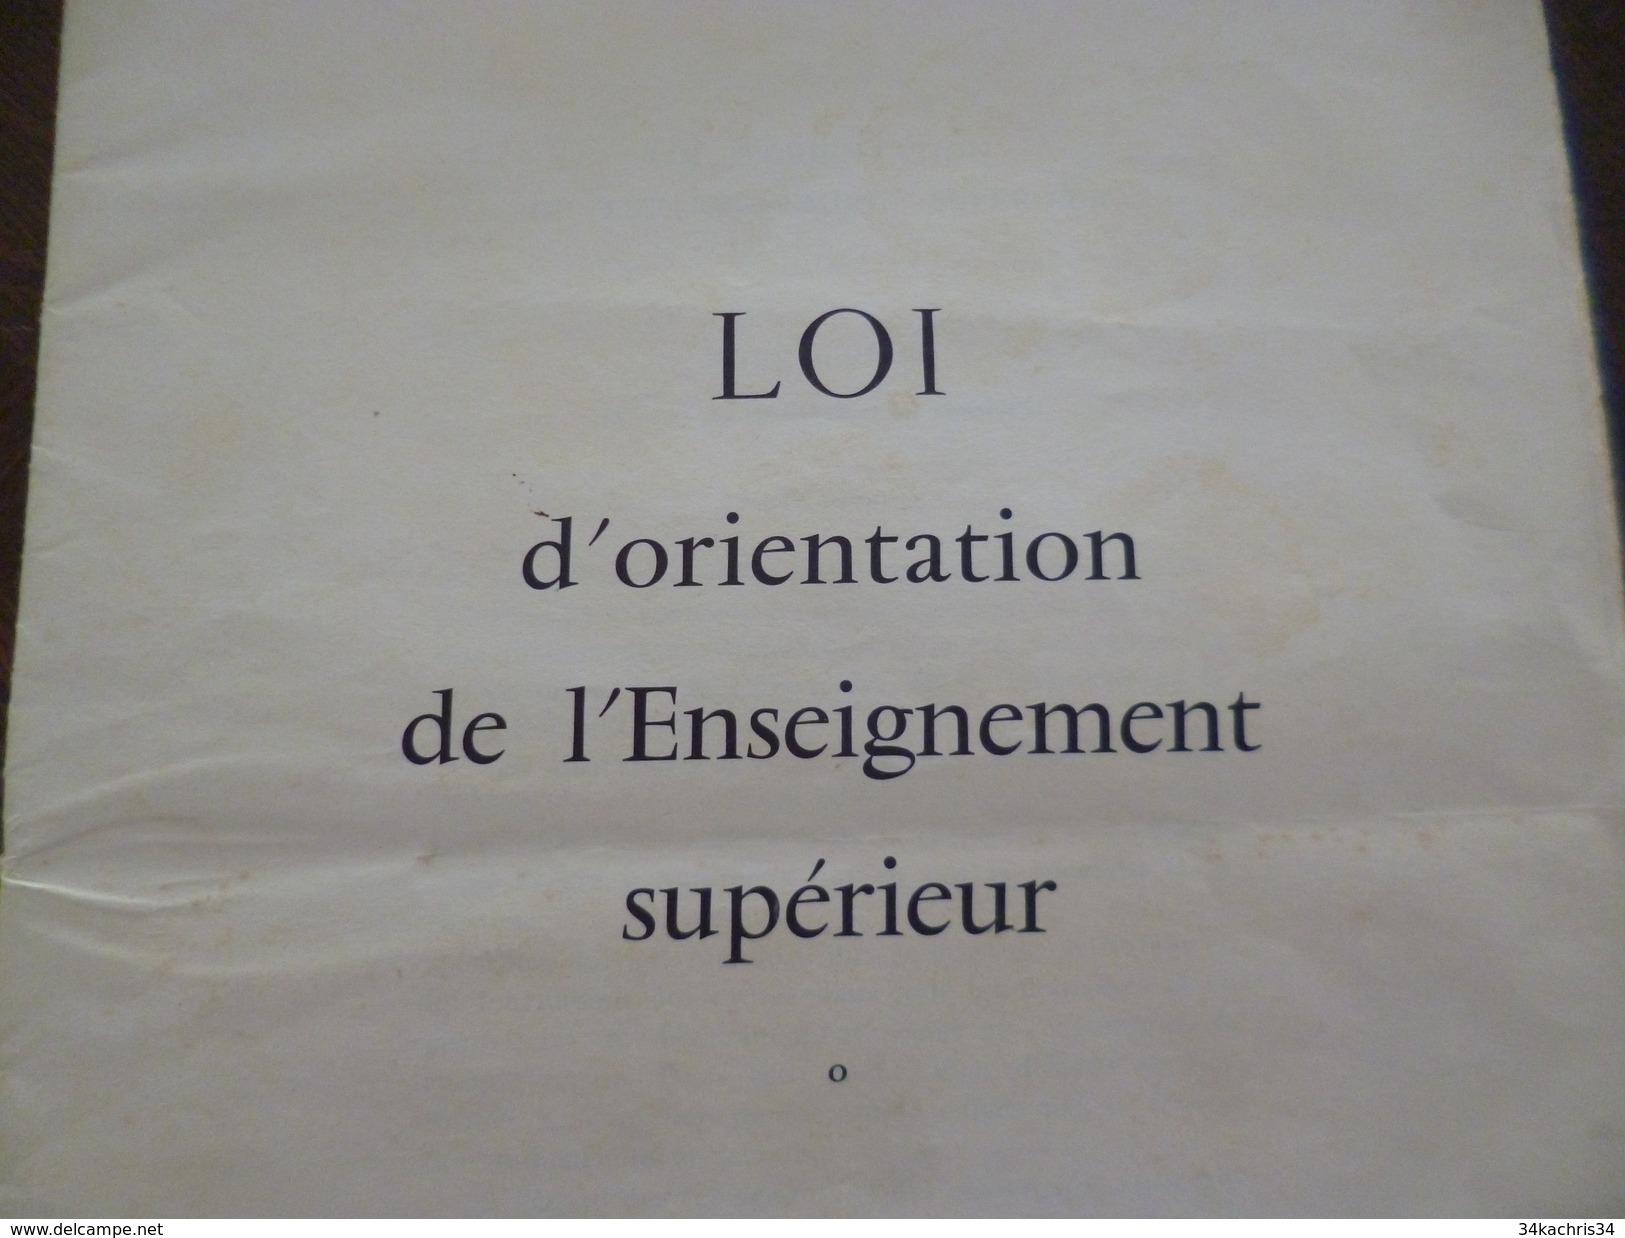 Original Loi D'orientation De L'enseignement Supérieur 7/11/1968. 24 Pages - Décrets & Lois